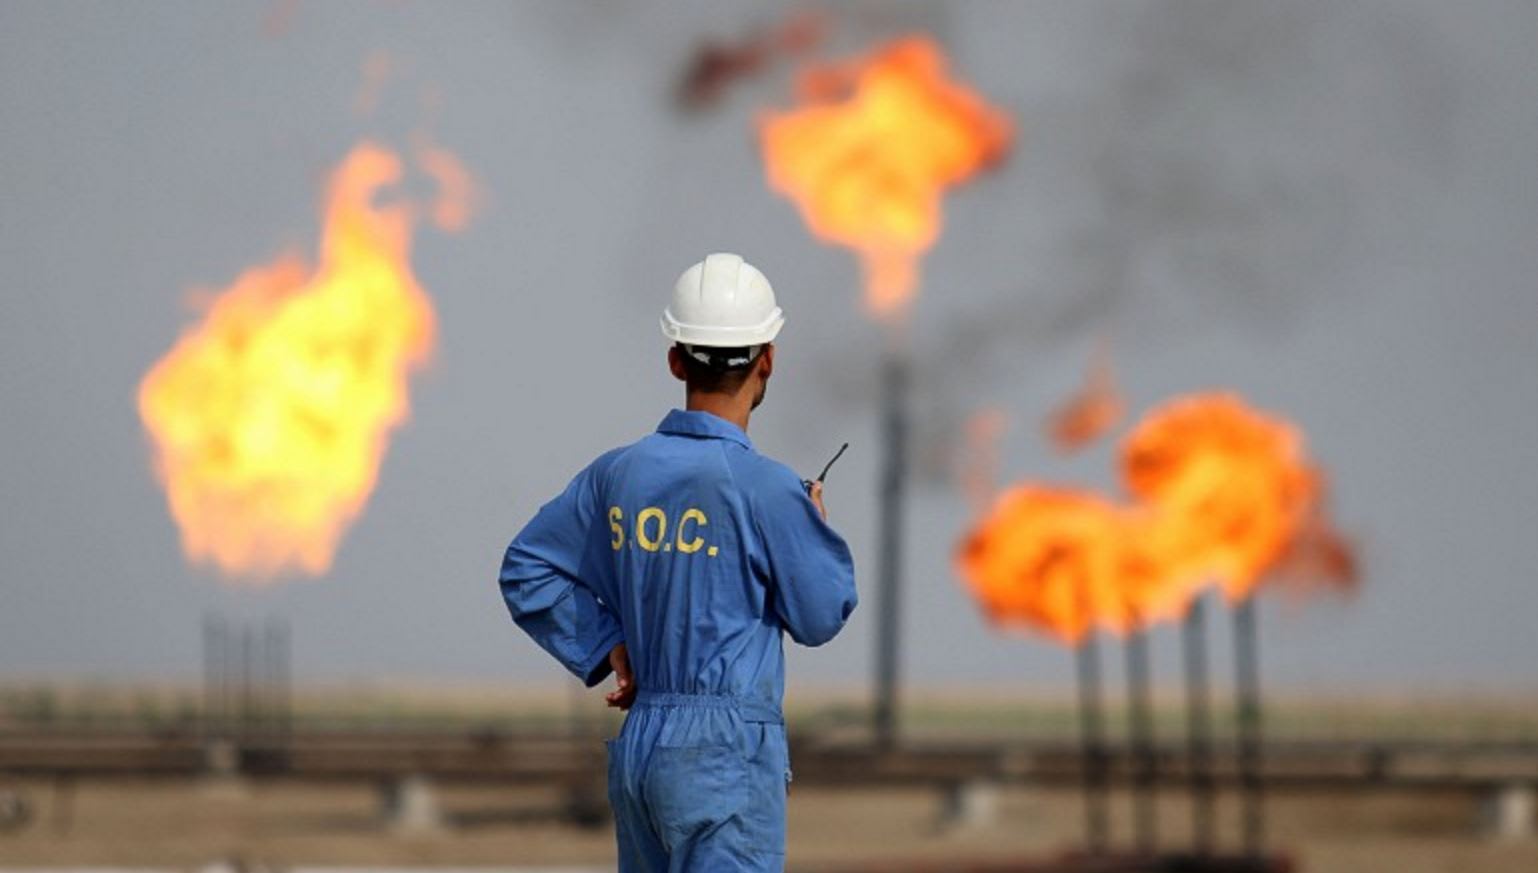 العراق يضخ النفط بوتيرة قياسية رغم الفوضى التي تعم البلاد.. و"داعش" ليس العائق الوحيد أمام الانتاج